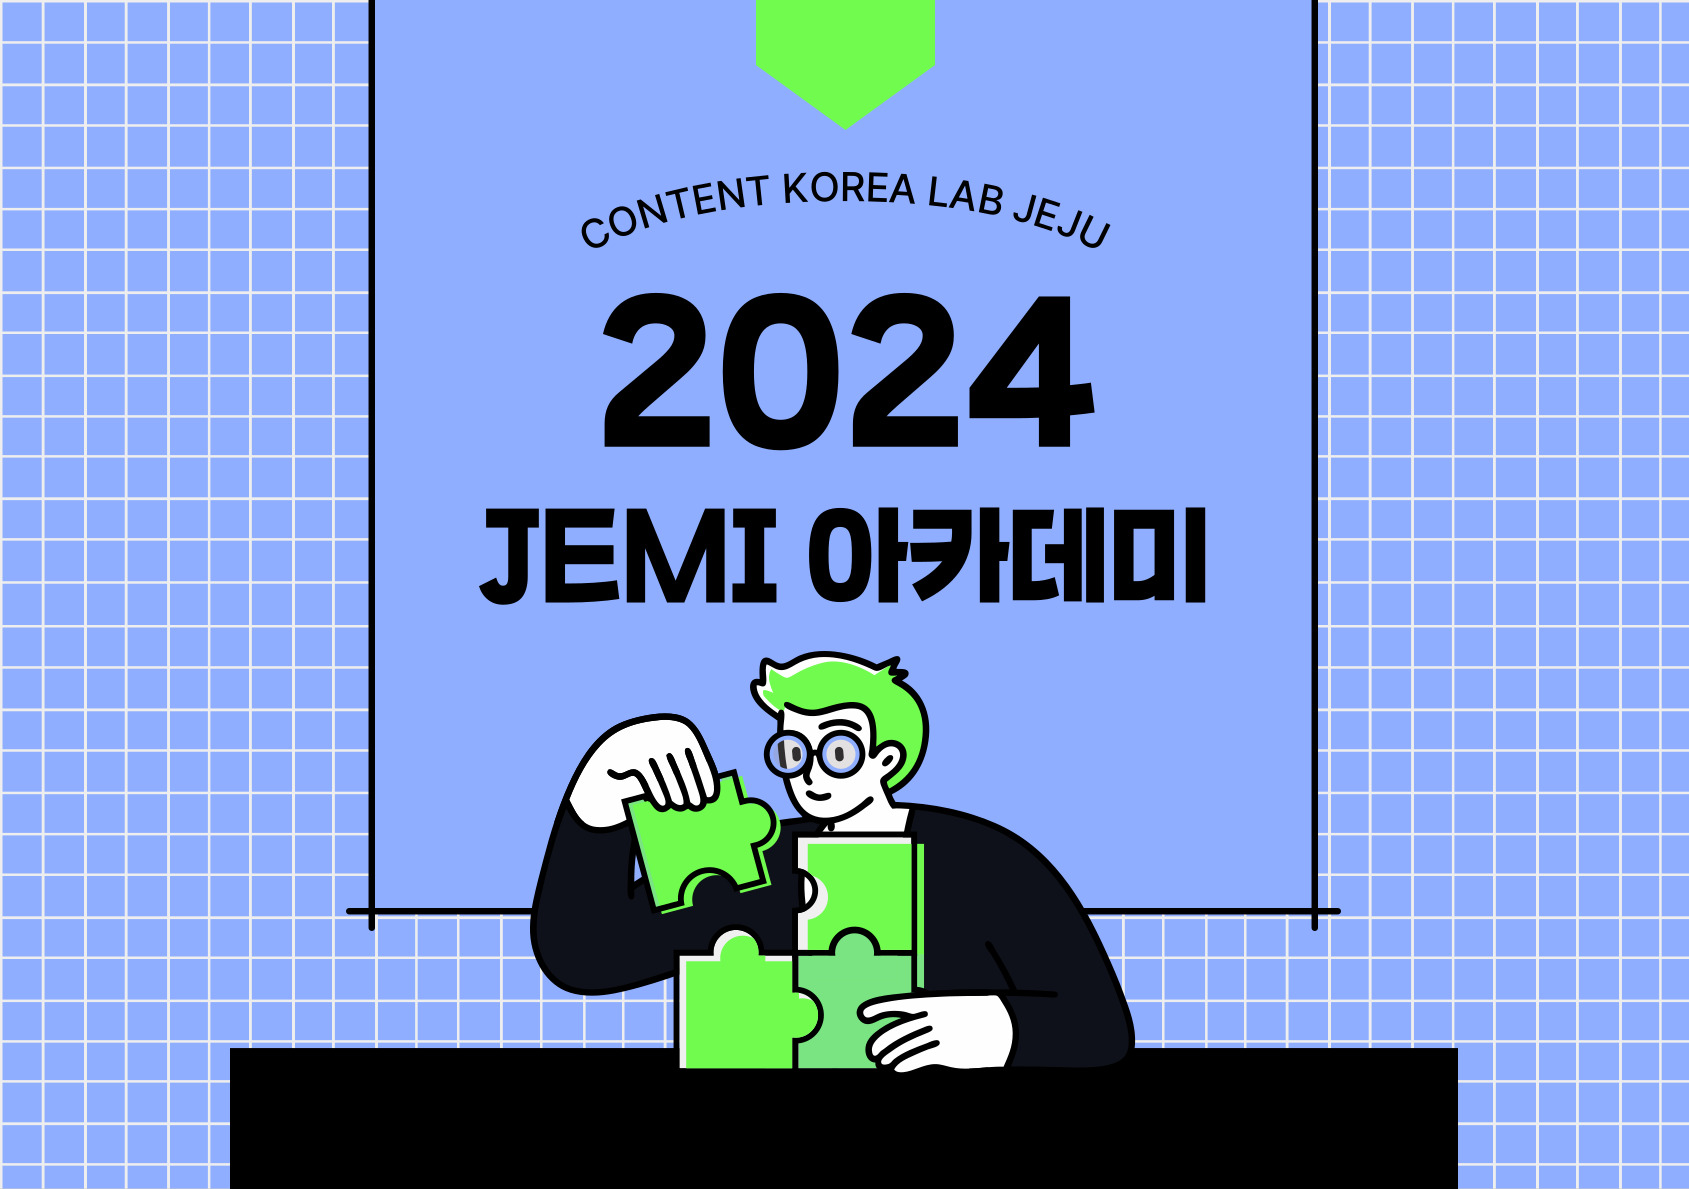 2024 제주콘텐츠코리아랩 JEMI아카데미 모집